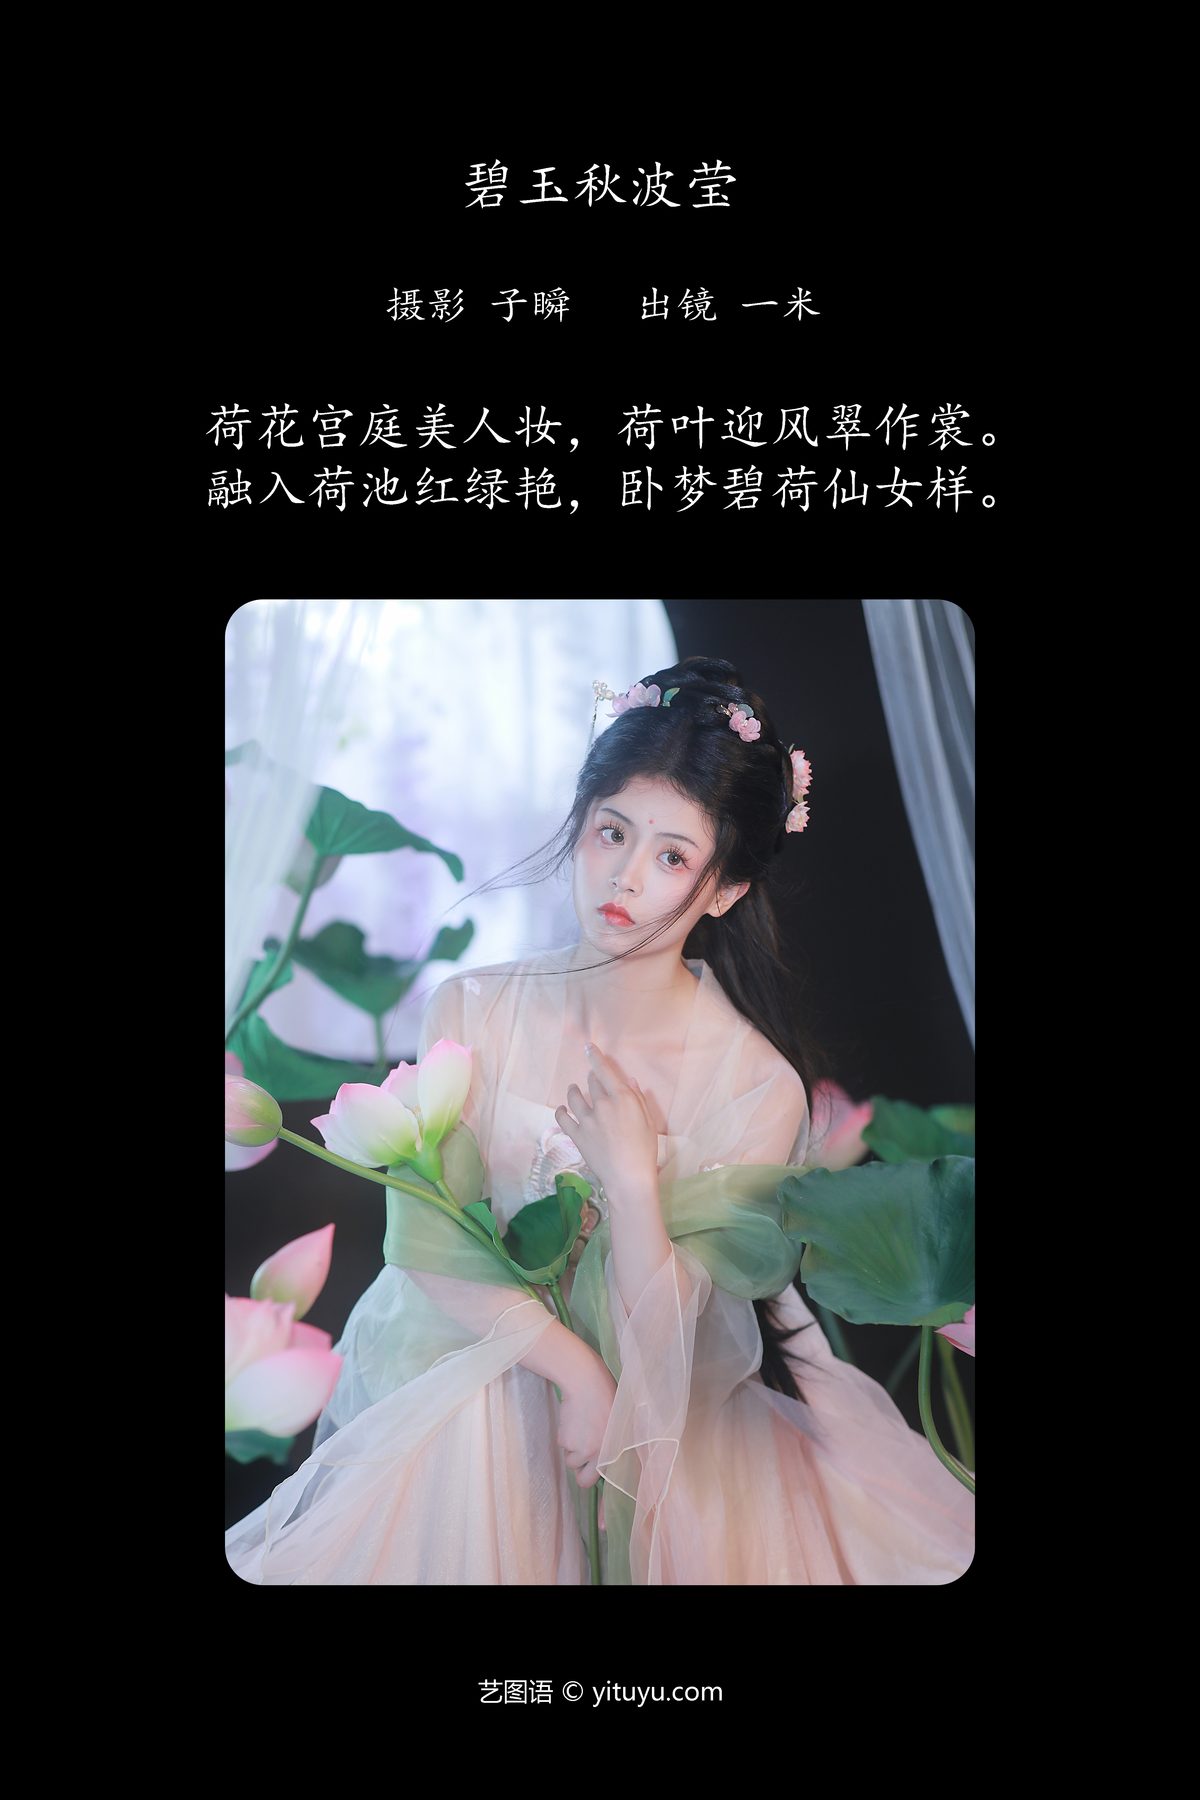 YiTuYu艺图语 Vol 4974 Dai Bu Zhu De Yi Mi 0002 6344955569.jpg